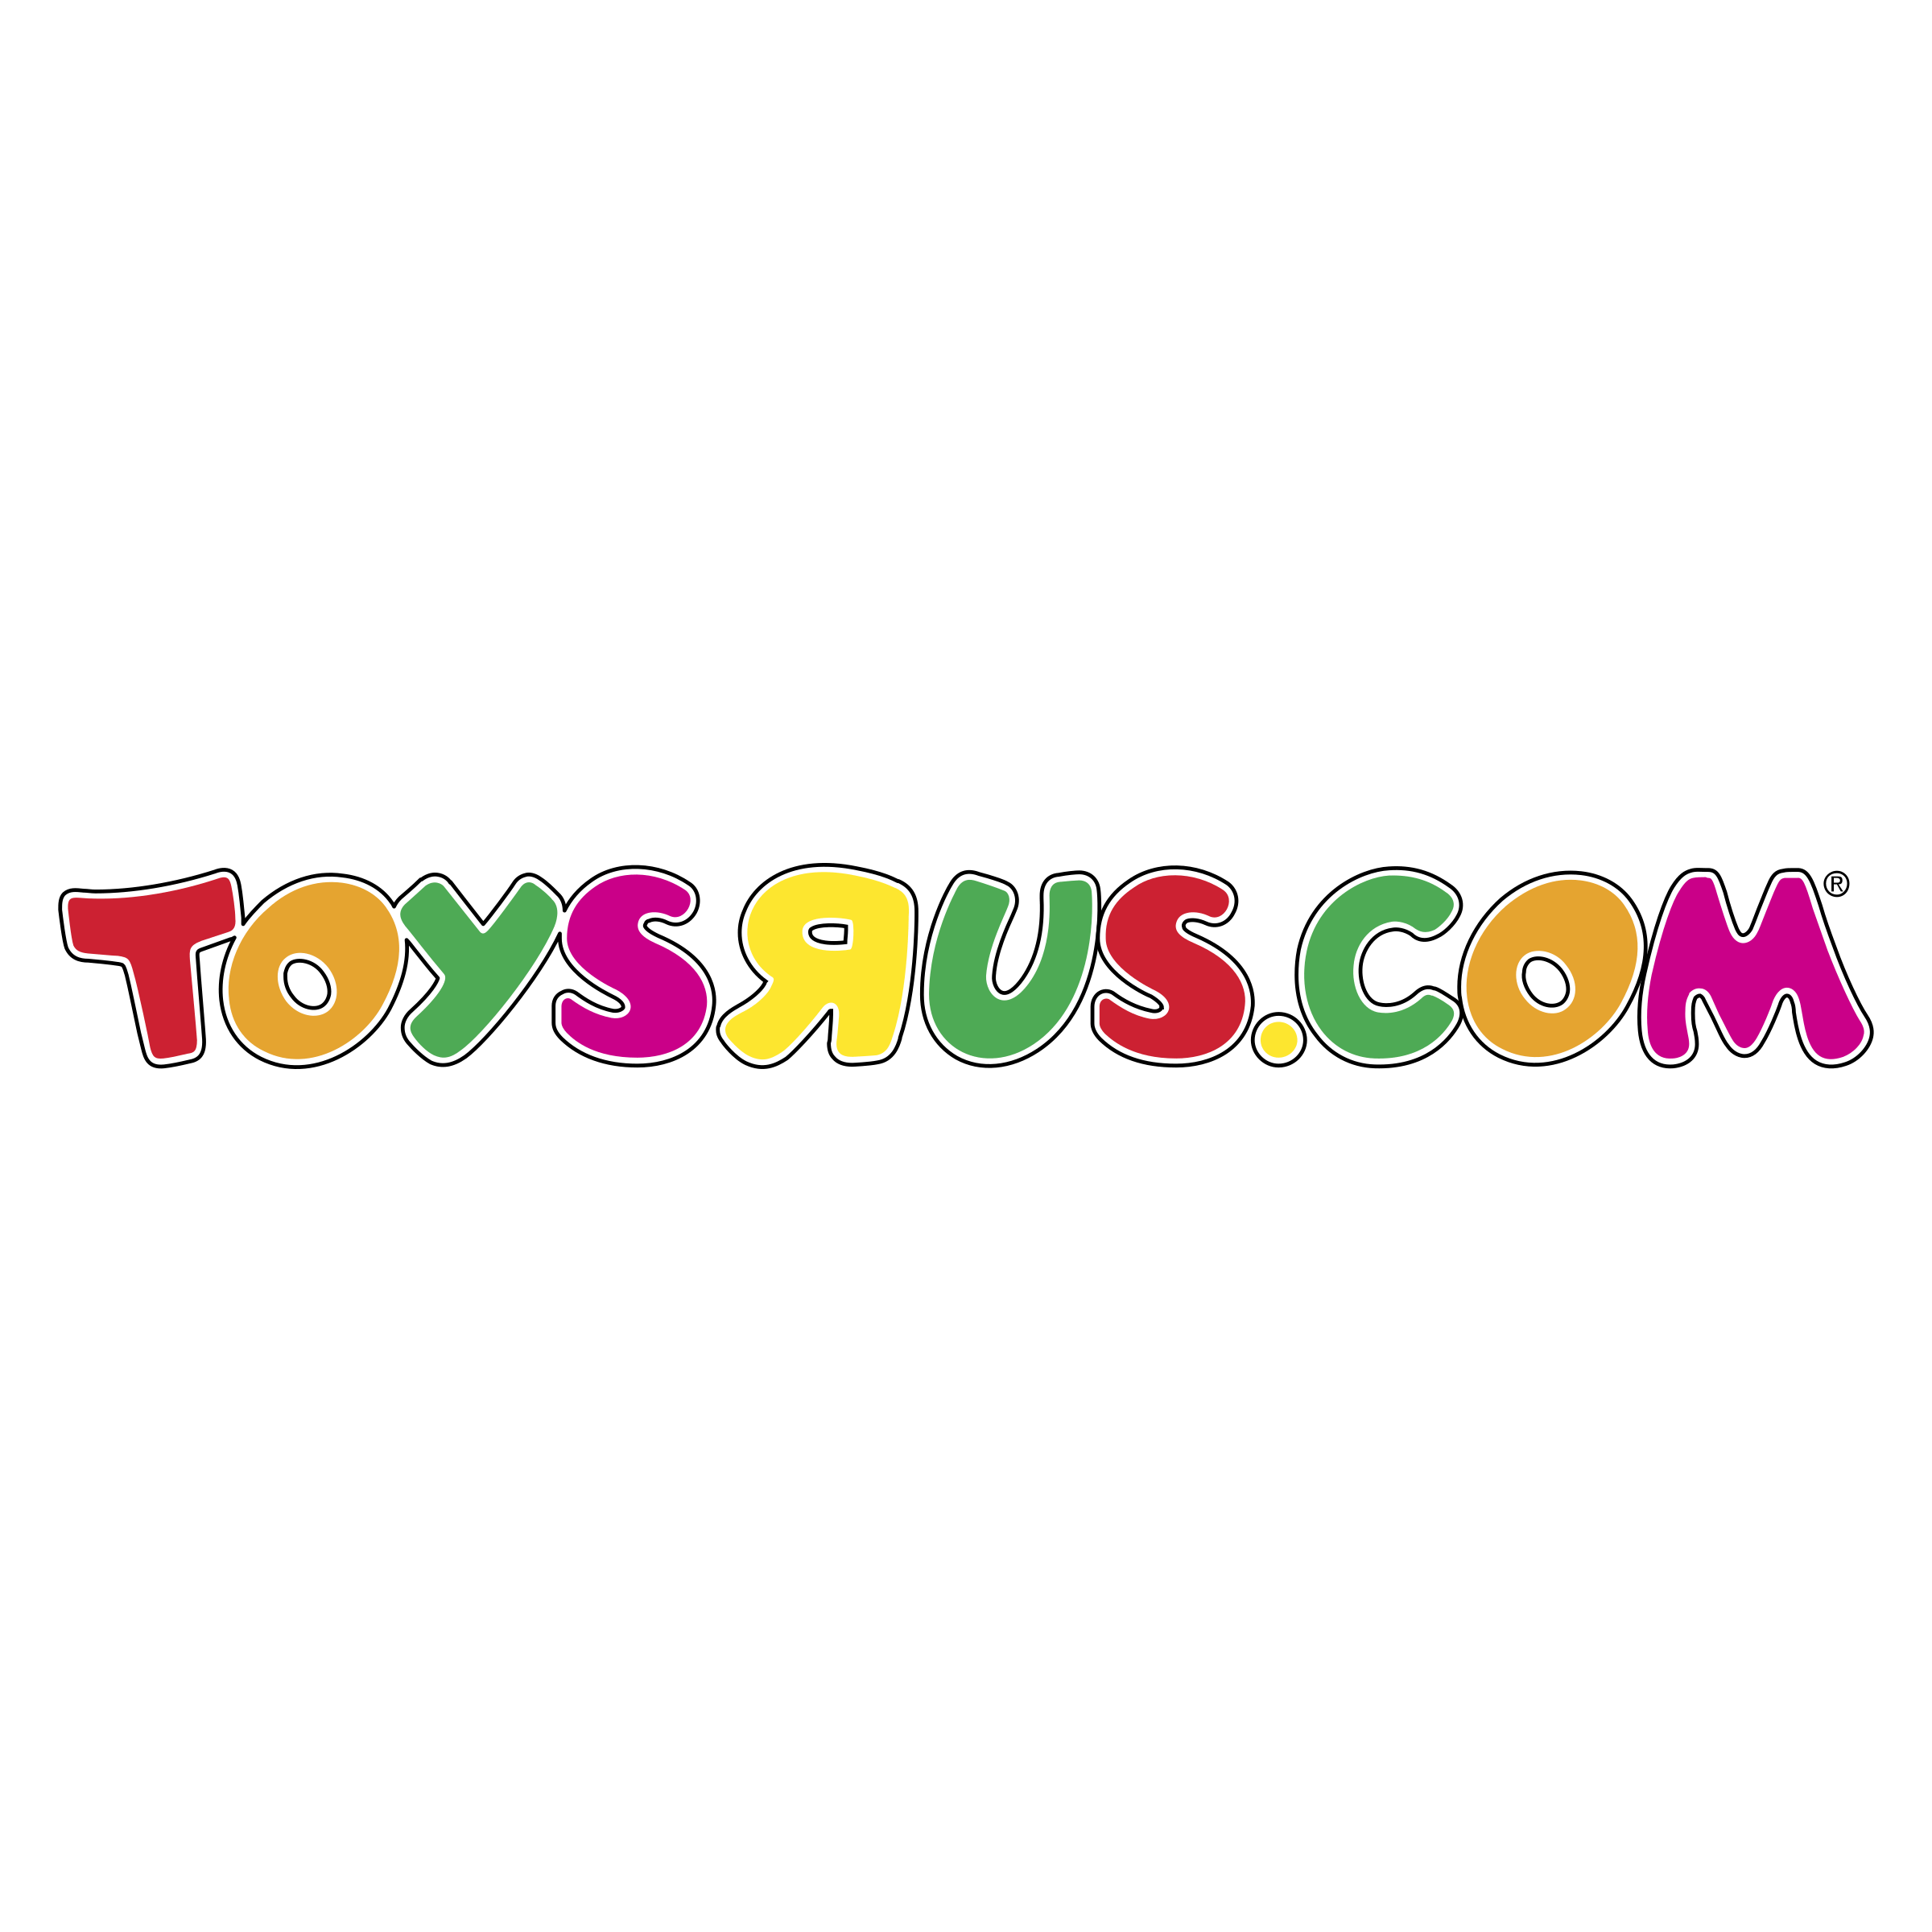 Toysrus.com Logo - toysrus com Logo PNG Transparent & SVG Vector